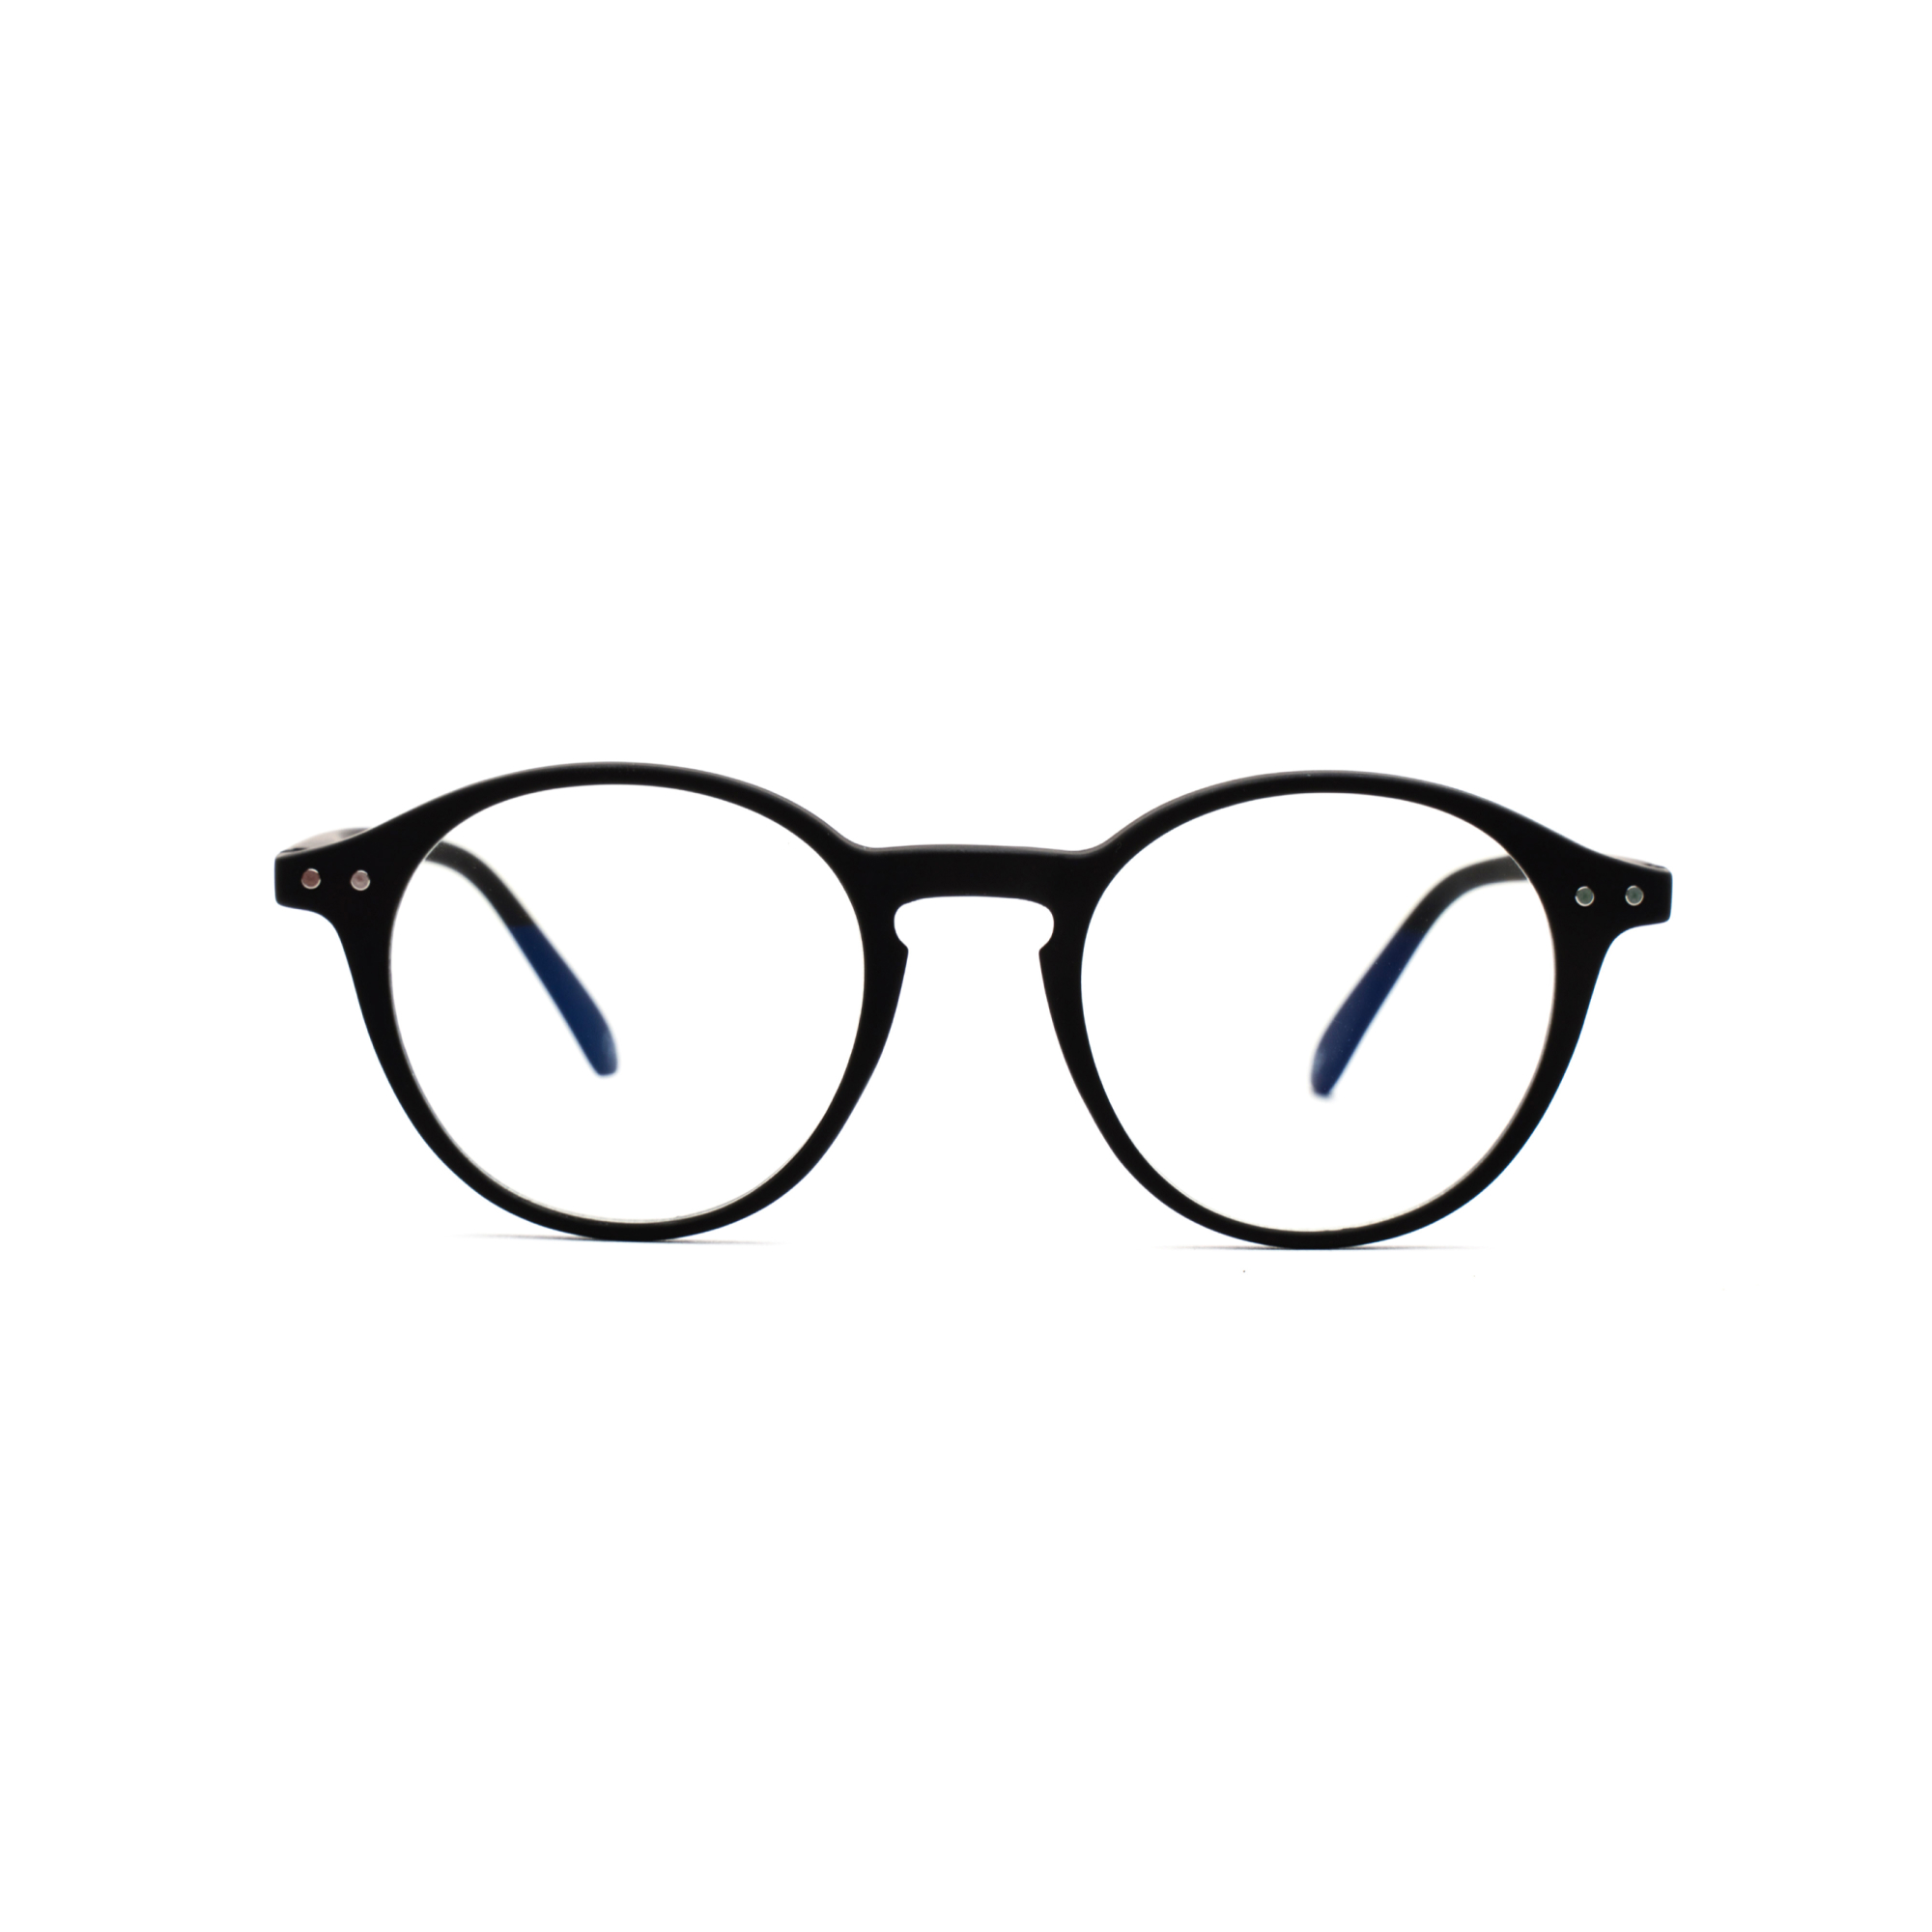 – Luca BlueVision m Blue Light Reading Glasses, Men's